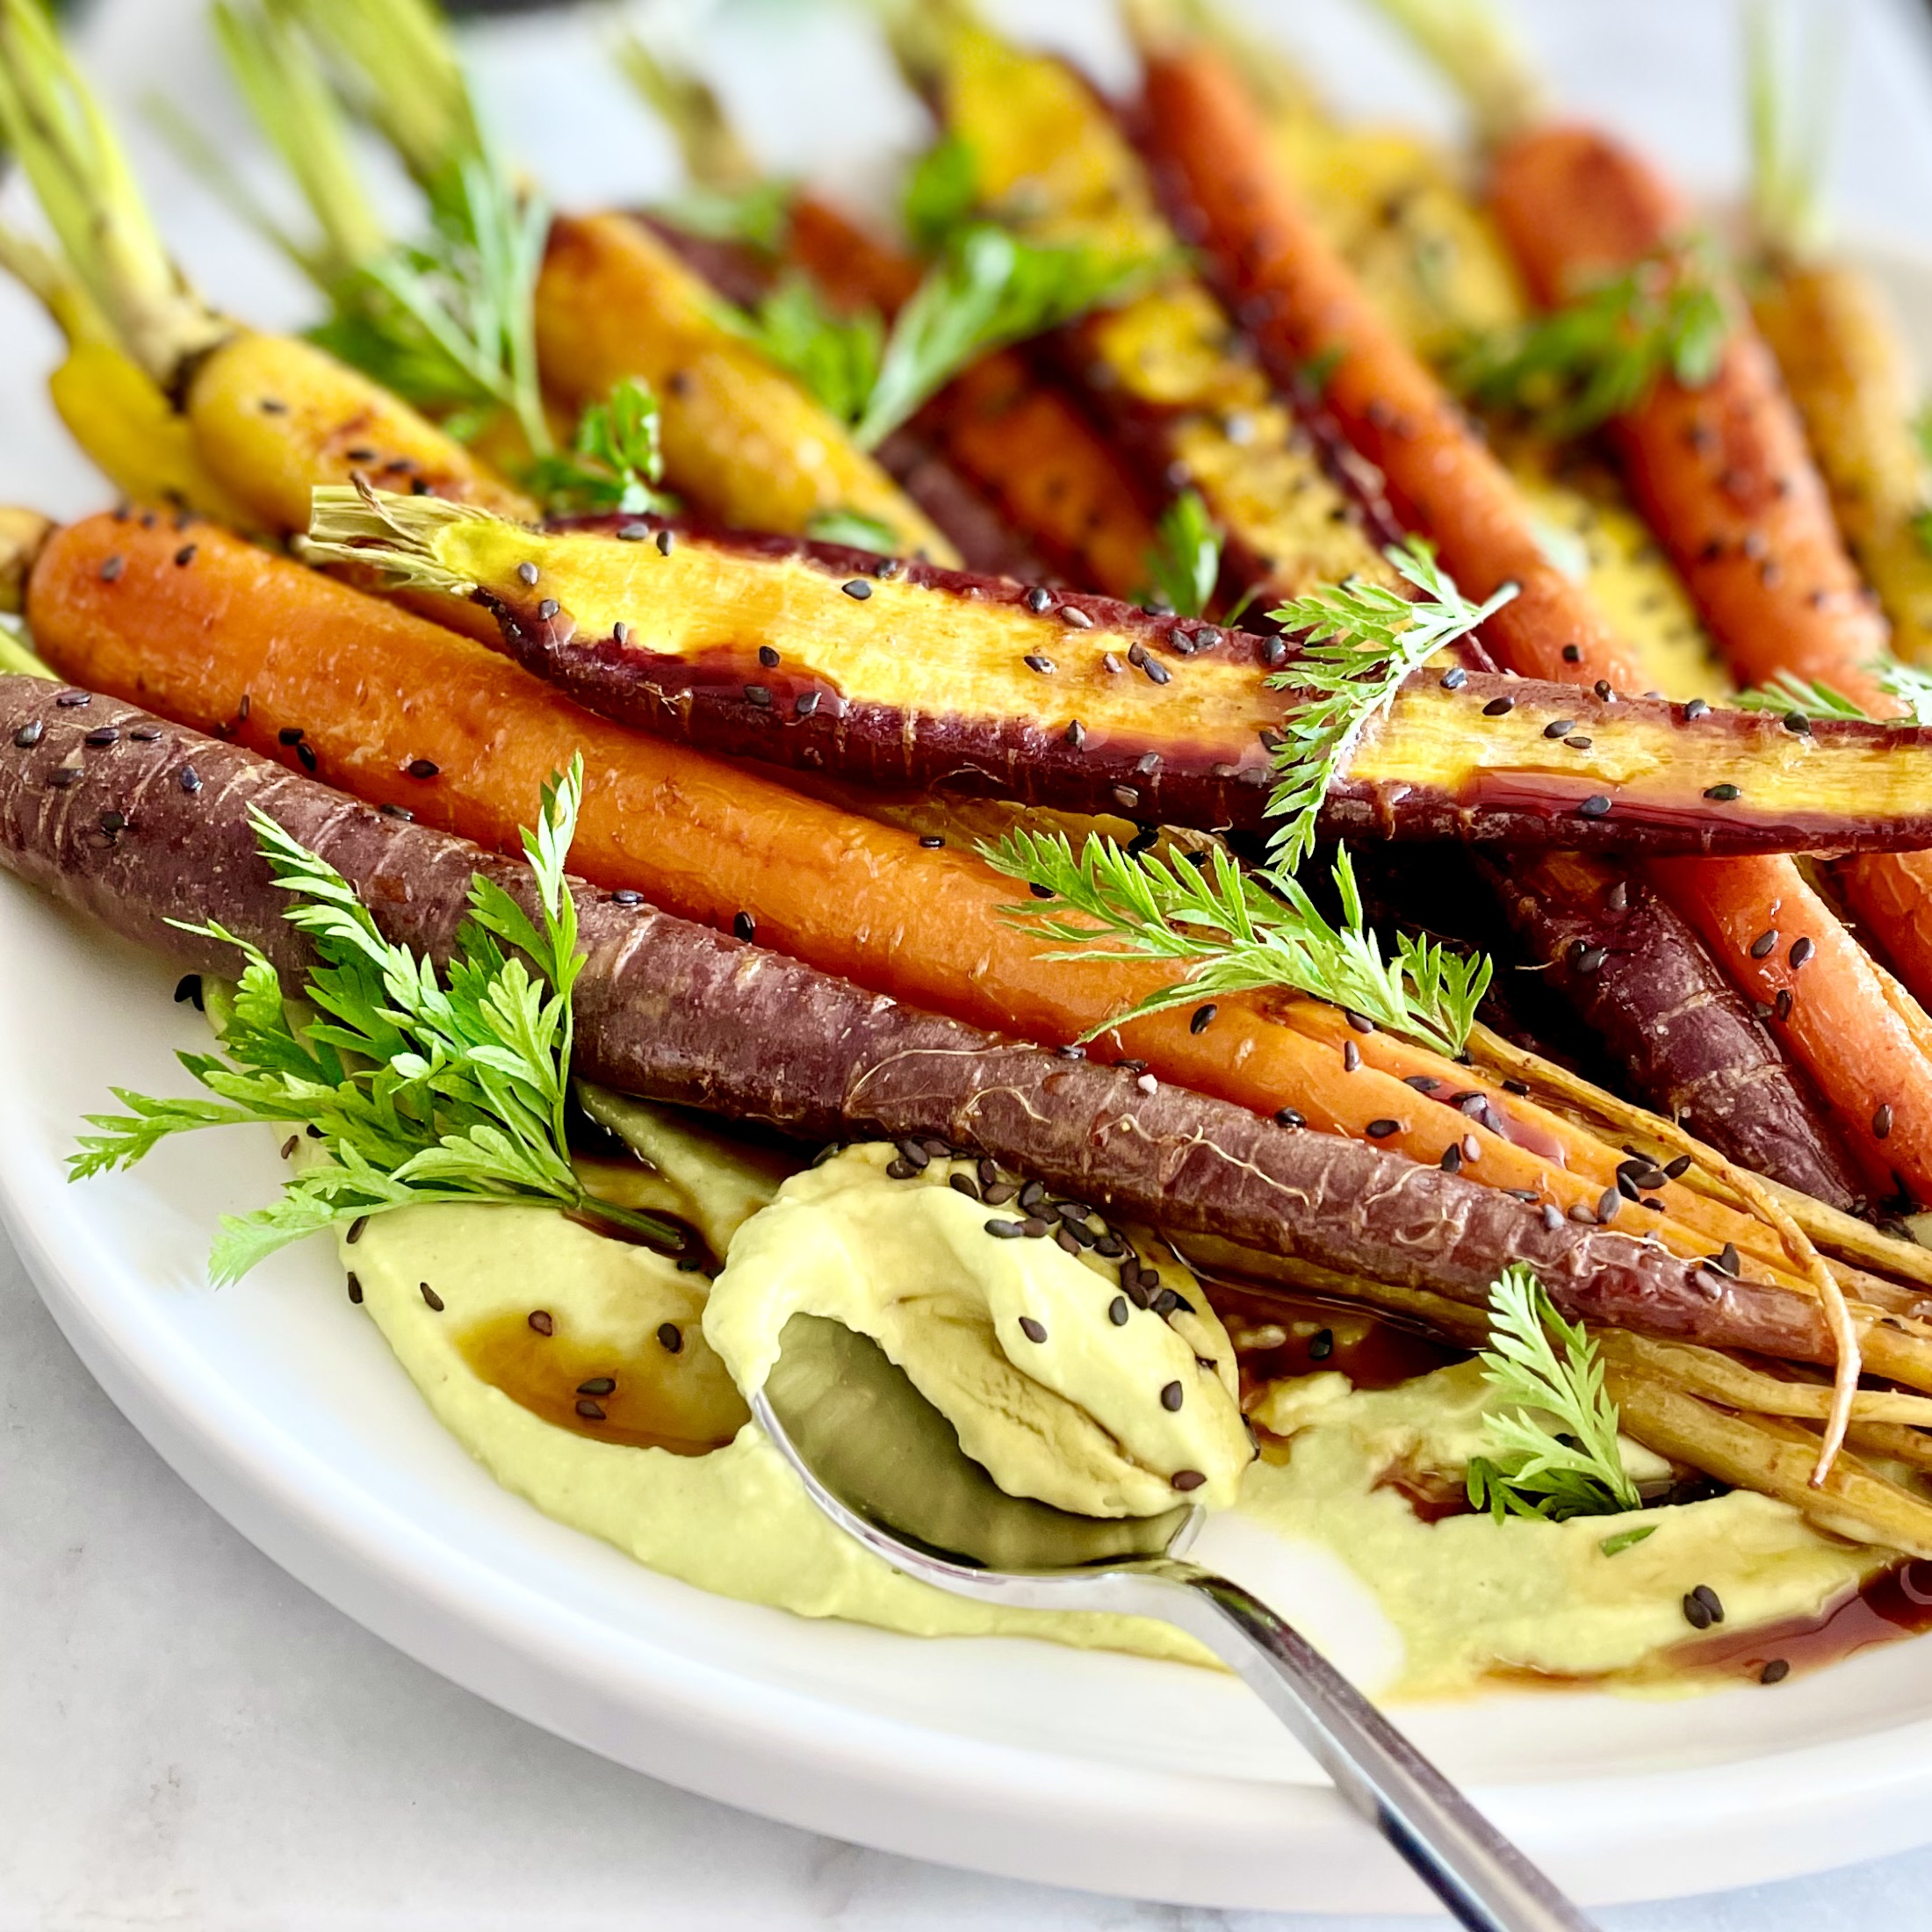 Plate of roasted rainbow carrots on puree